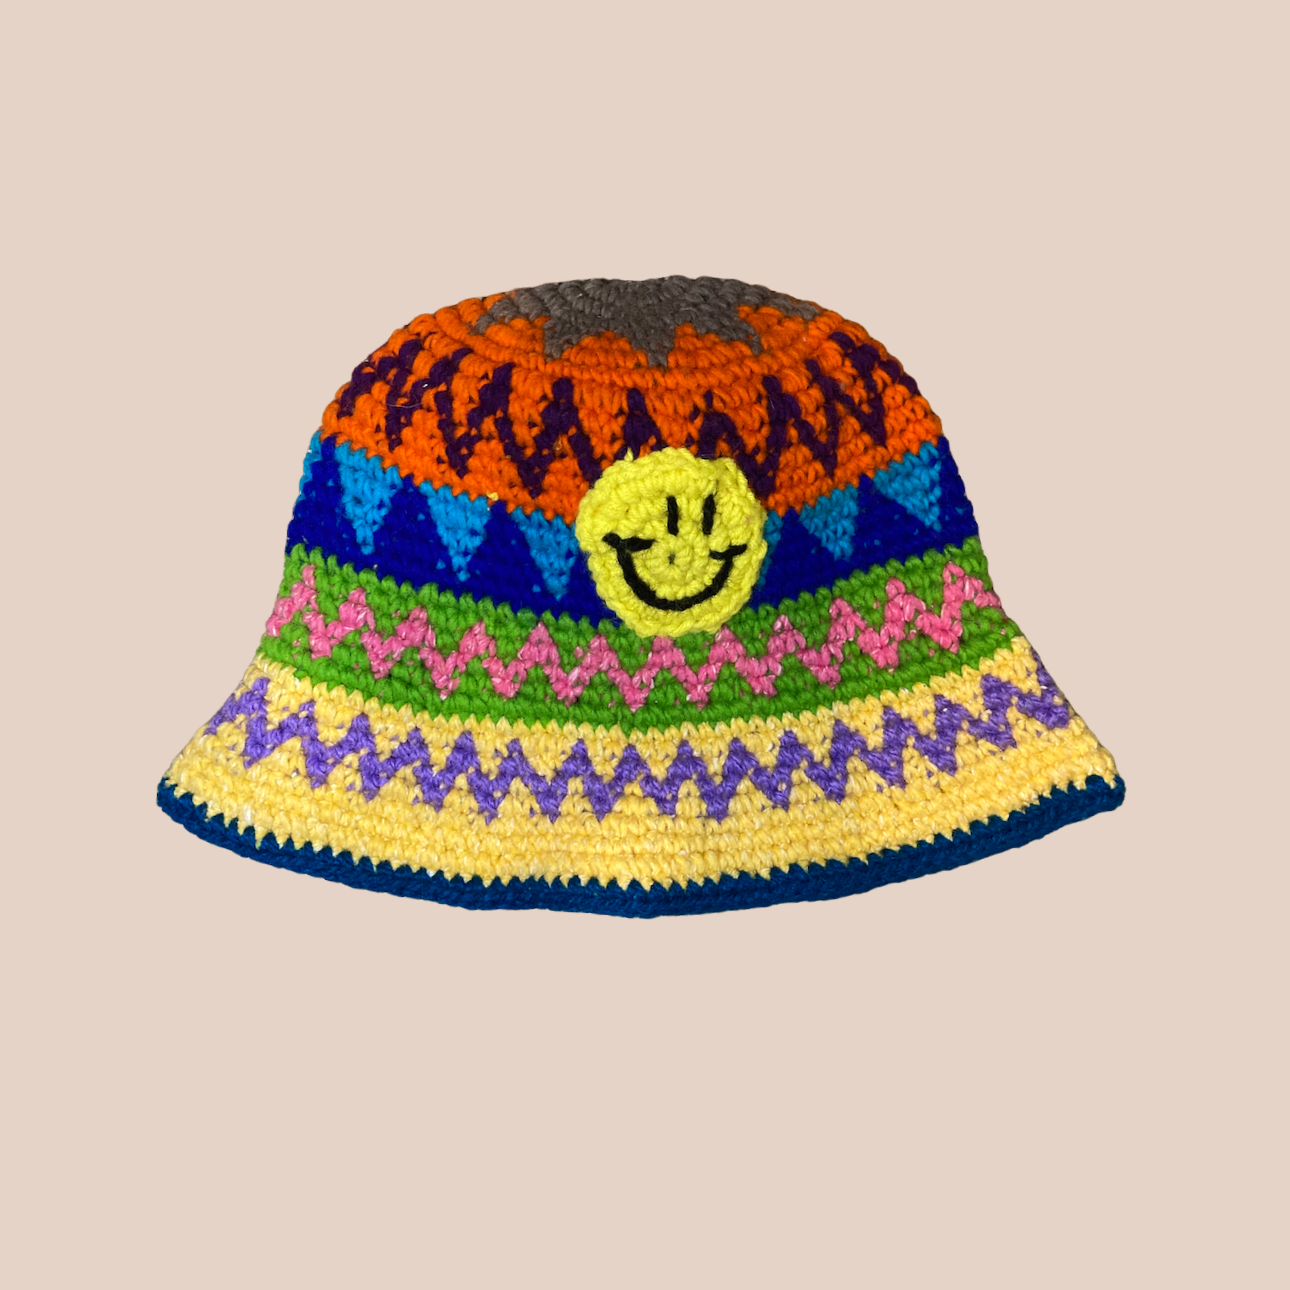 Image du bucket hat motifs smiley de Maison Badigo, bucket hat (bob) multicolore unique et tendance